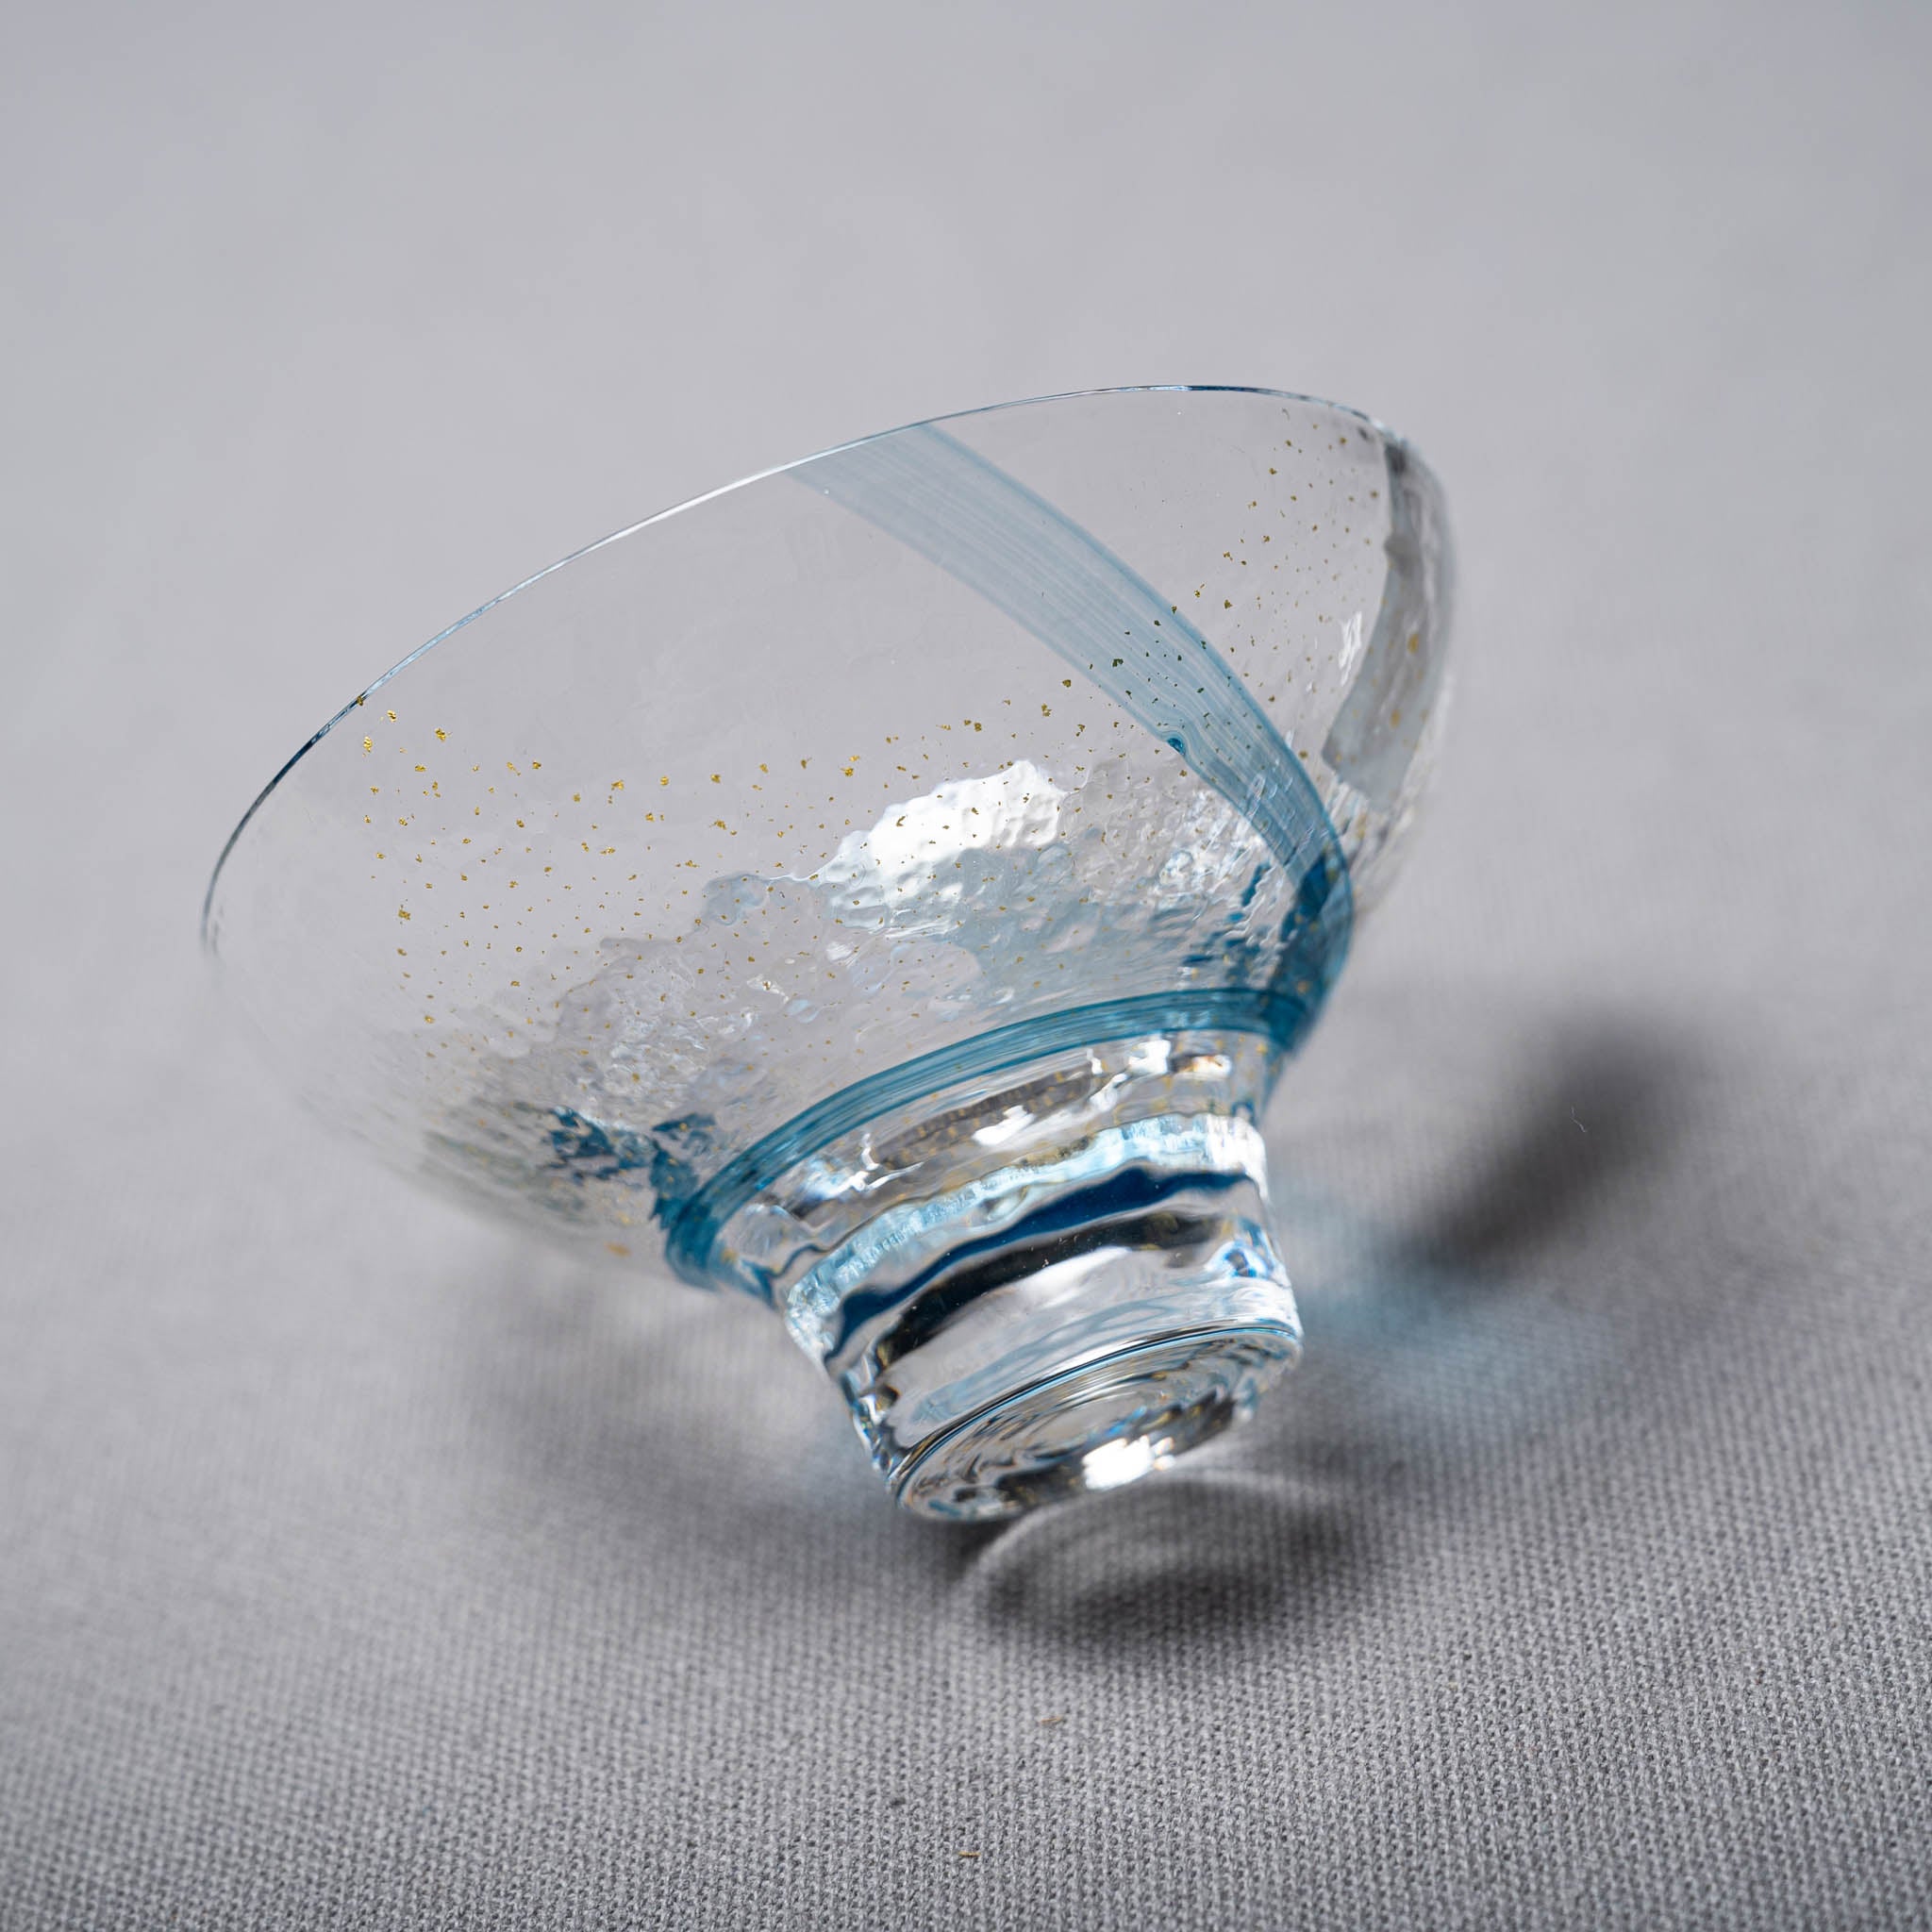 Yachiyo Edo Glass Sake Cup  120 ml - Sea Breeze / 江戸硝子 八千代窯 海風